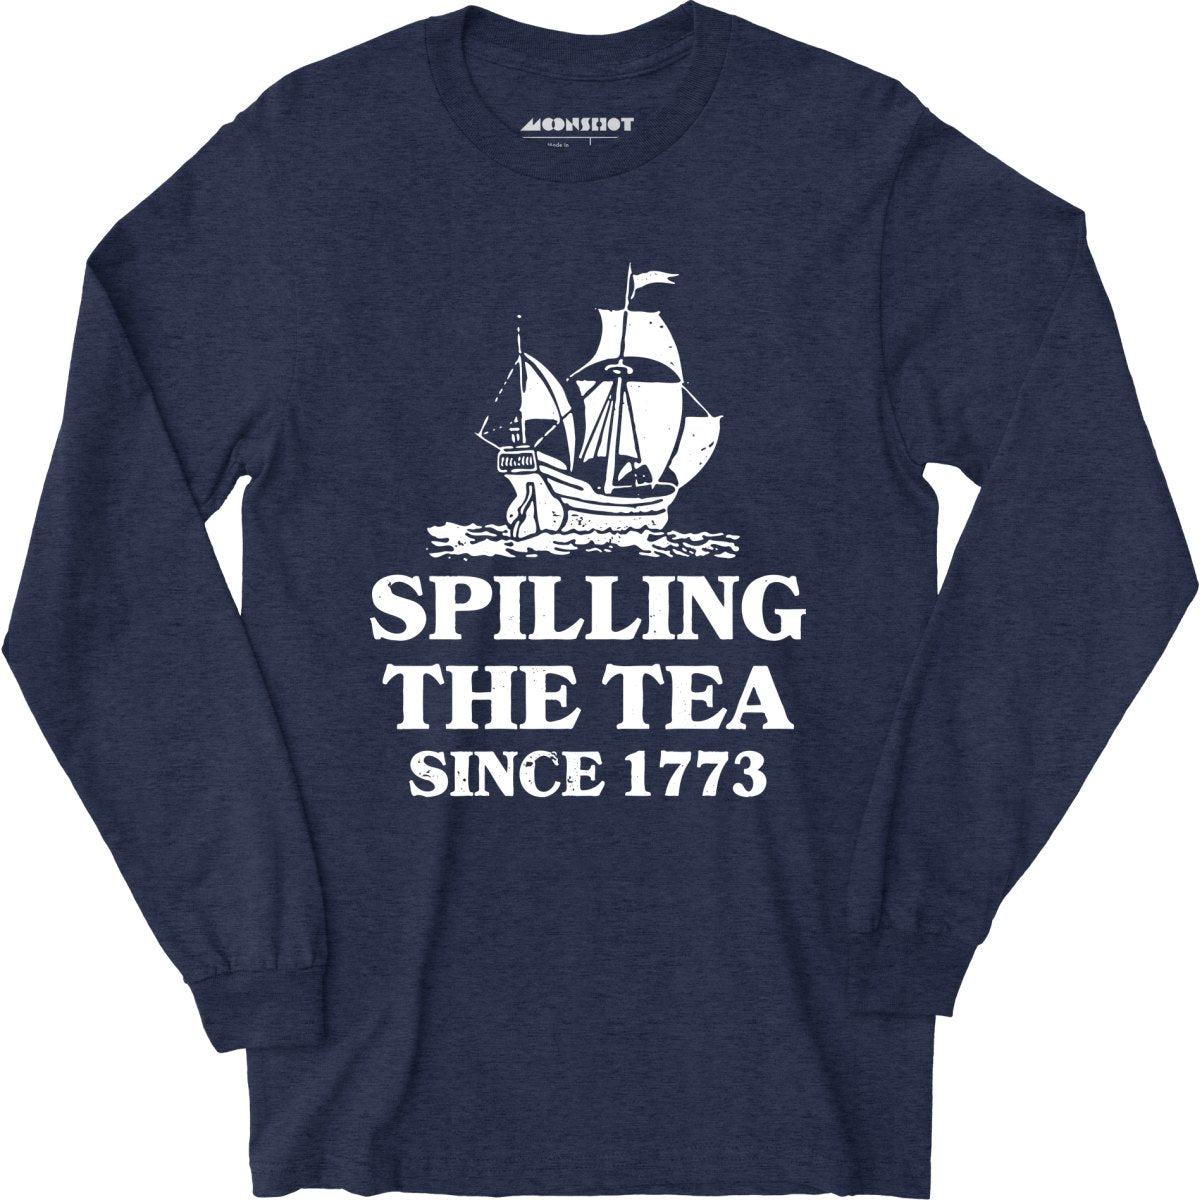 Spilling The Tea Since 1773 - Long Sleeve T-Shirt